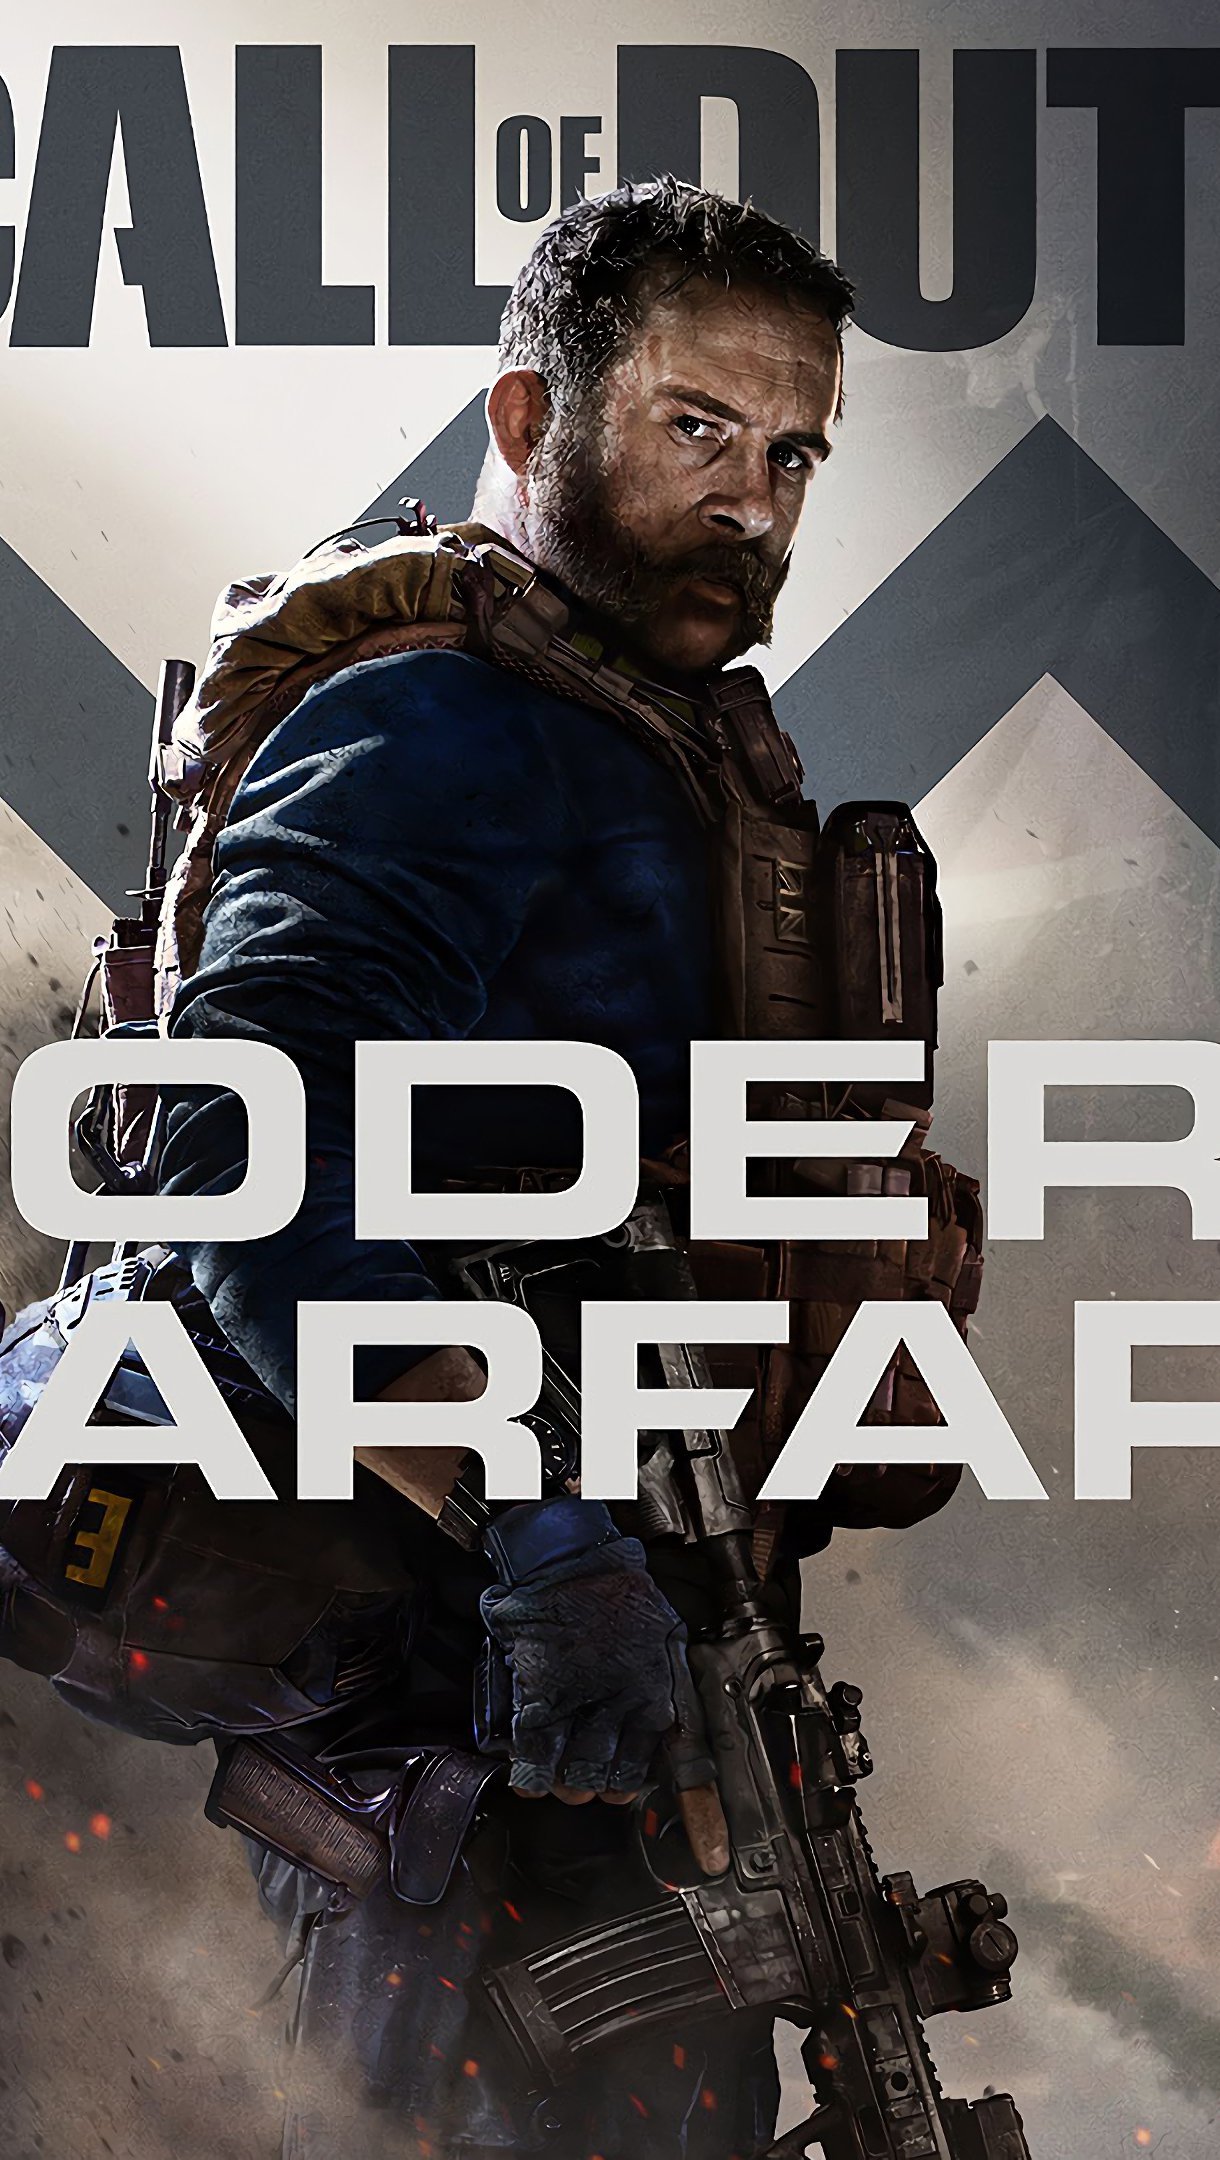 Call Duty Modern Warfare 2019 Fondo de pantalla 4k Ultra HD ID:4006